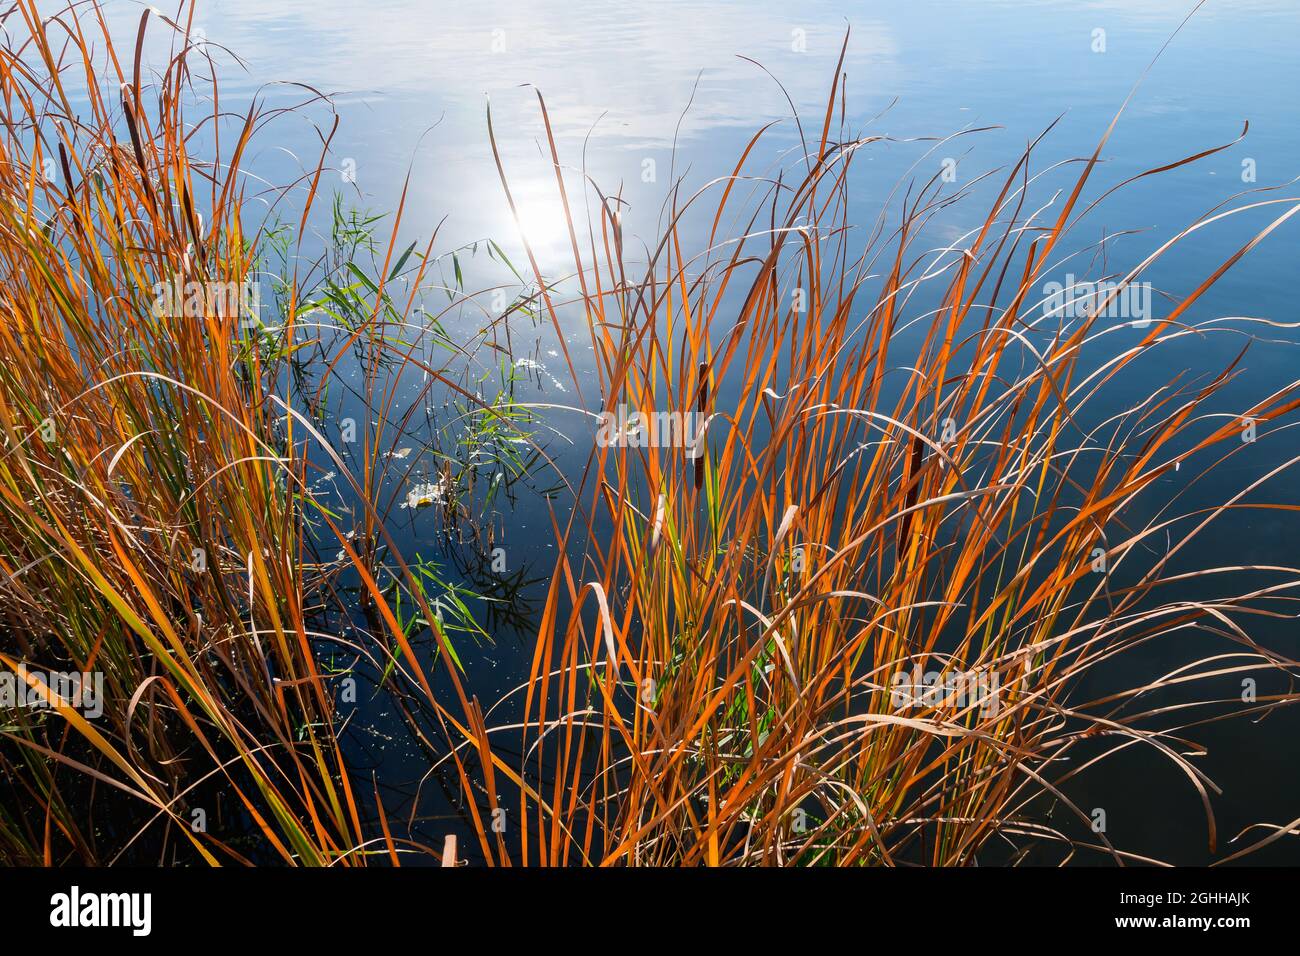 Schilfdickichte in der Nähe des Ufers und die Reflexion der Sonne im Wasser des Sees an einem Herbsttag. Stockfoto